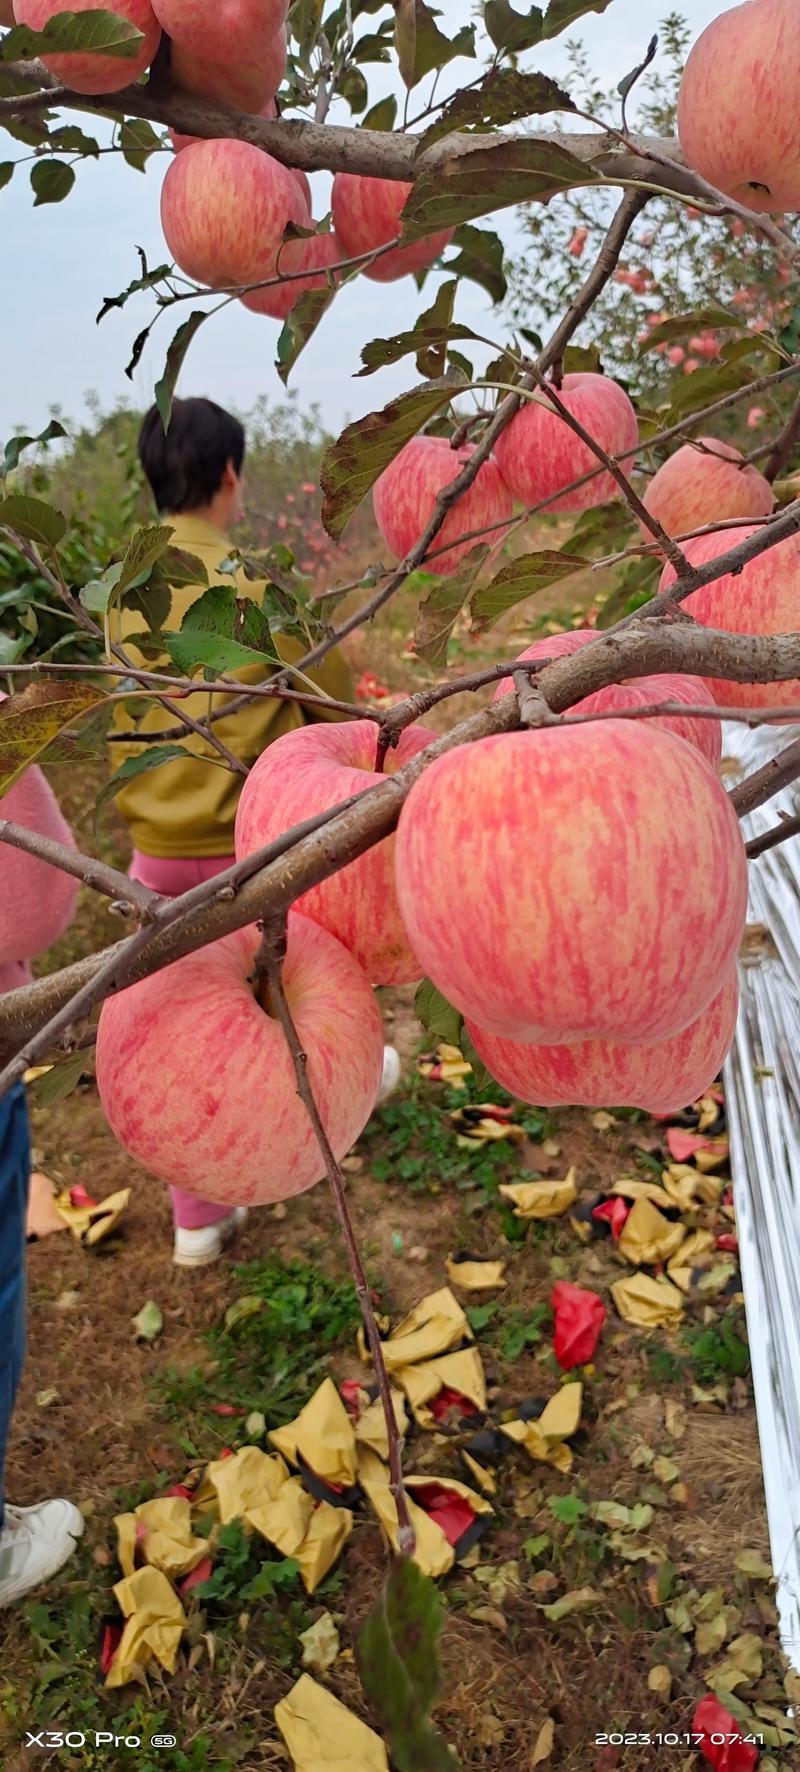 白水红富士苹果正在出库中，个大色红，糖度高皮薄，香脆甜。